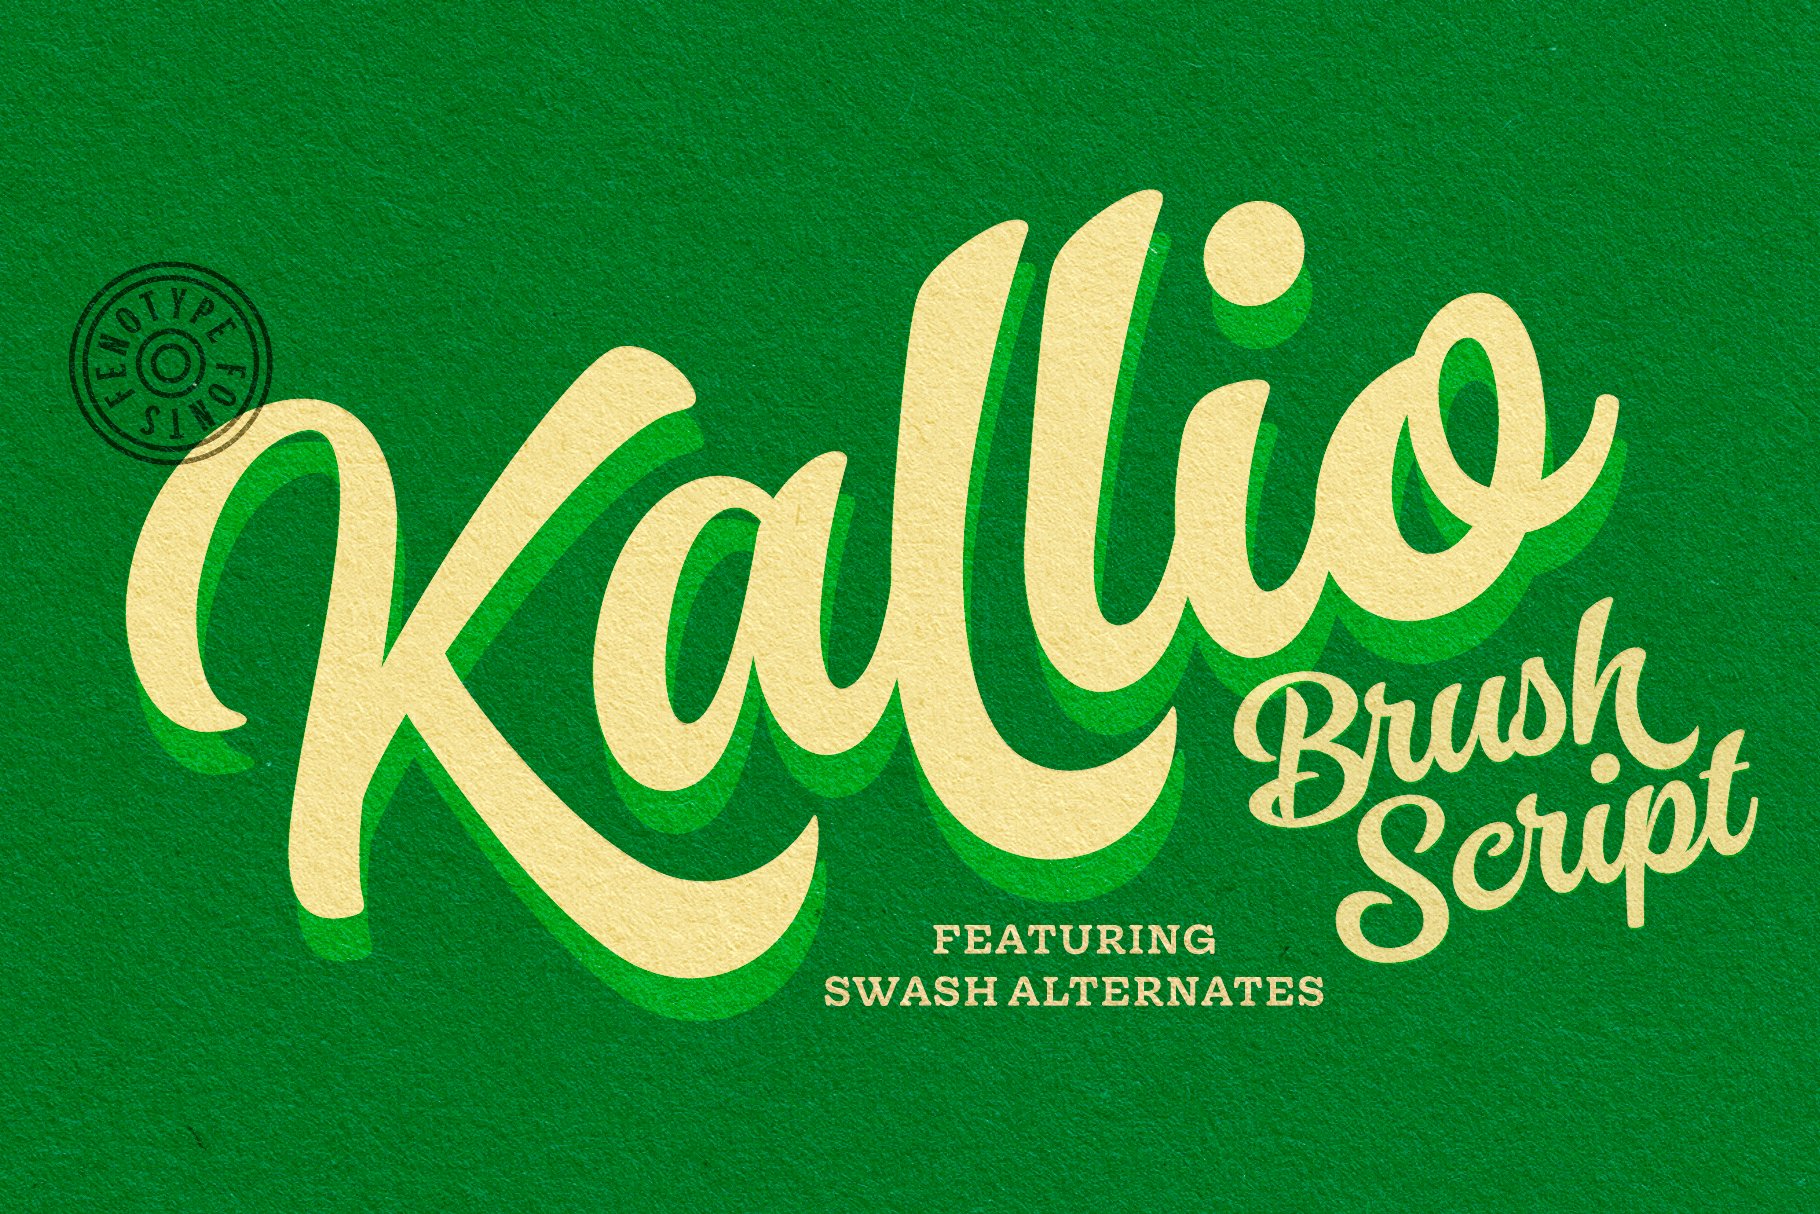 Kallio Brush Script cover image.